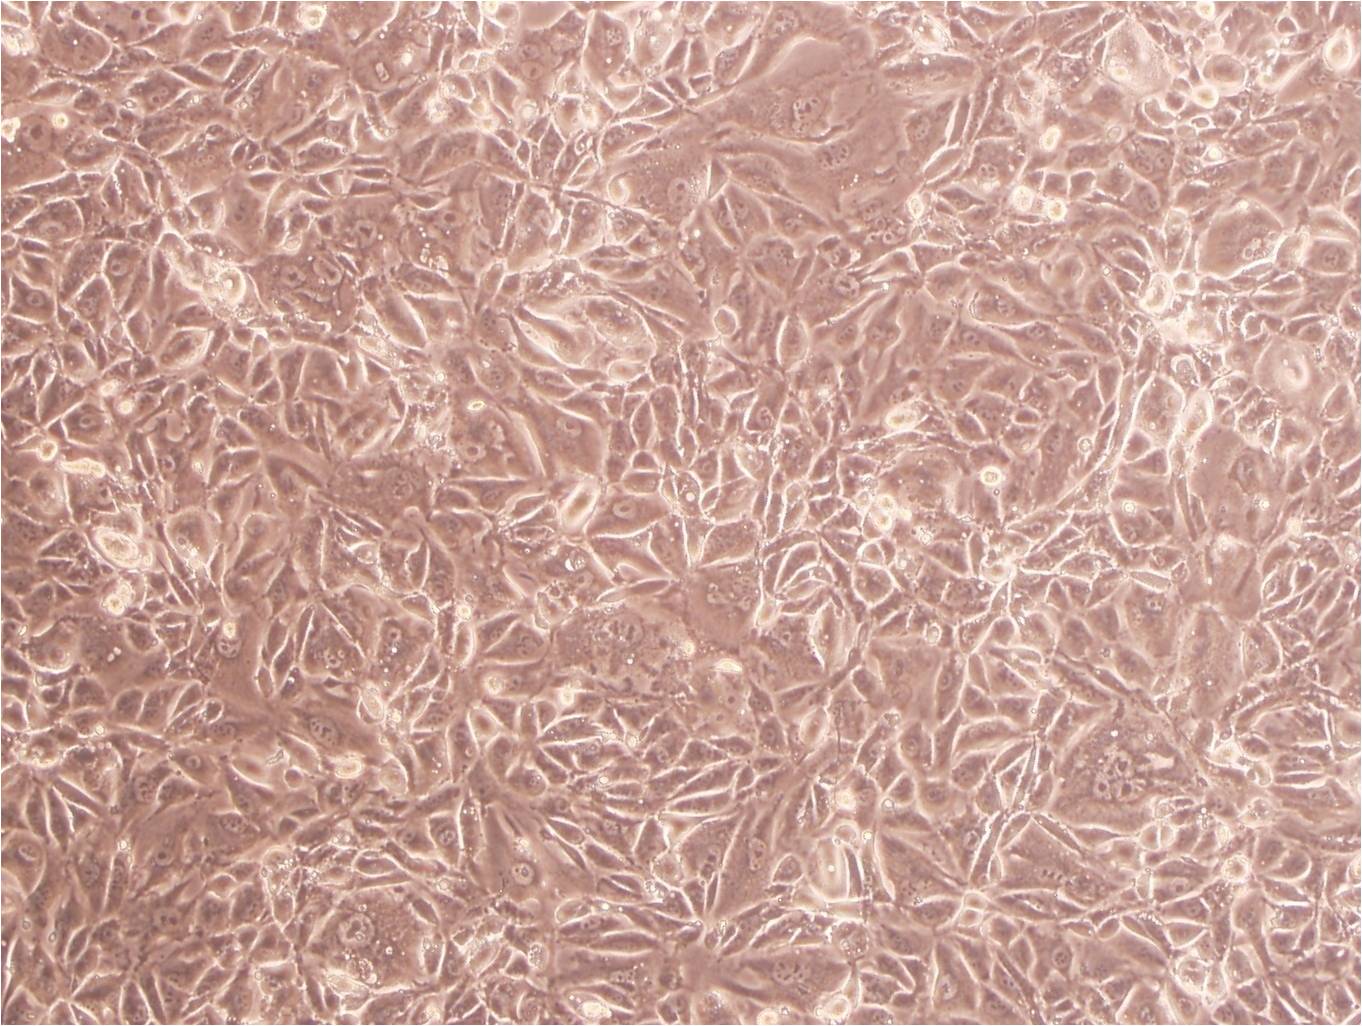 EC-GI-10:人食管鳞状细胞癌复苏细胞(提供STR鉴定图谱),EC-GI-10